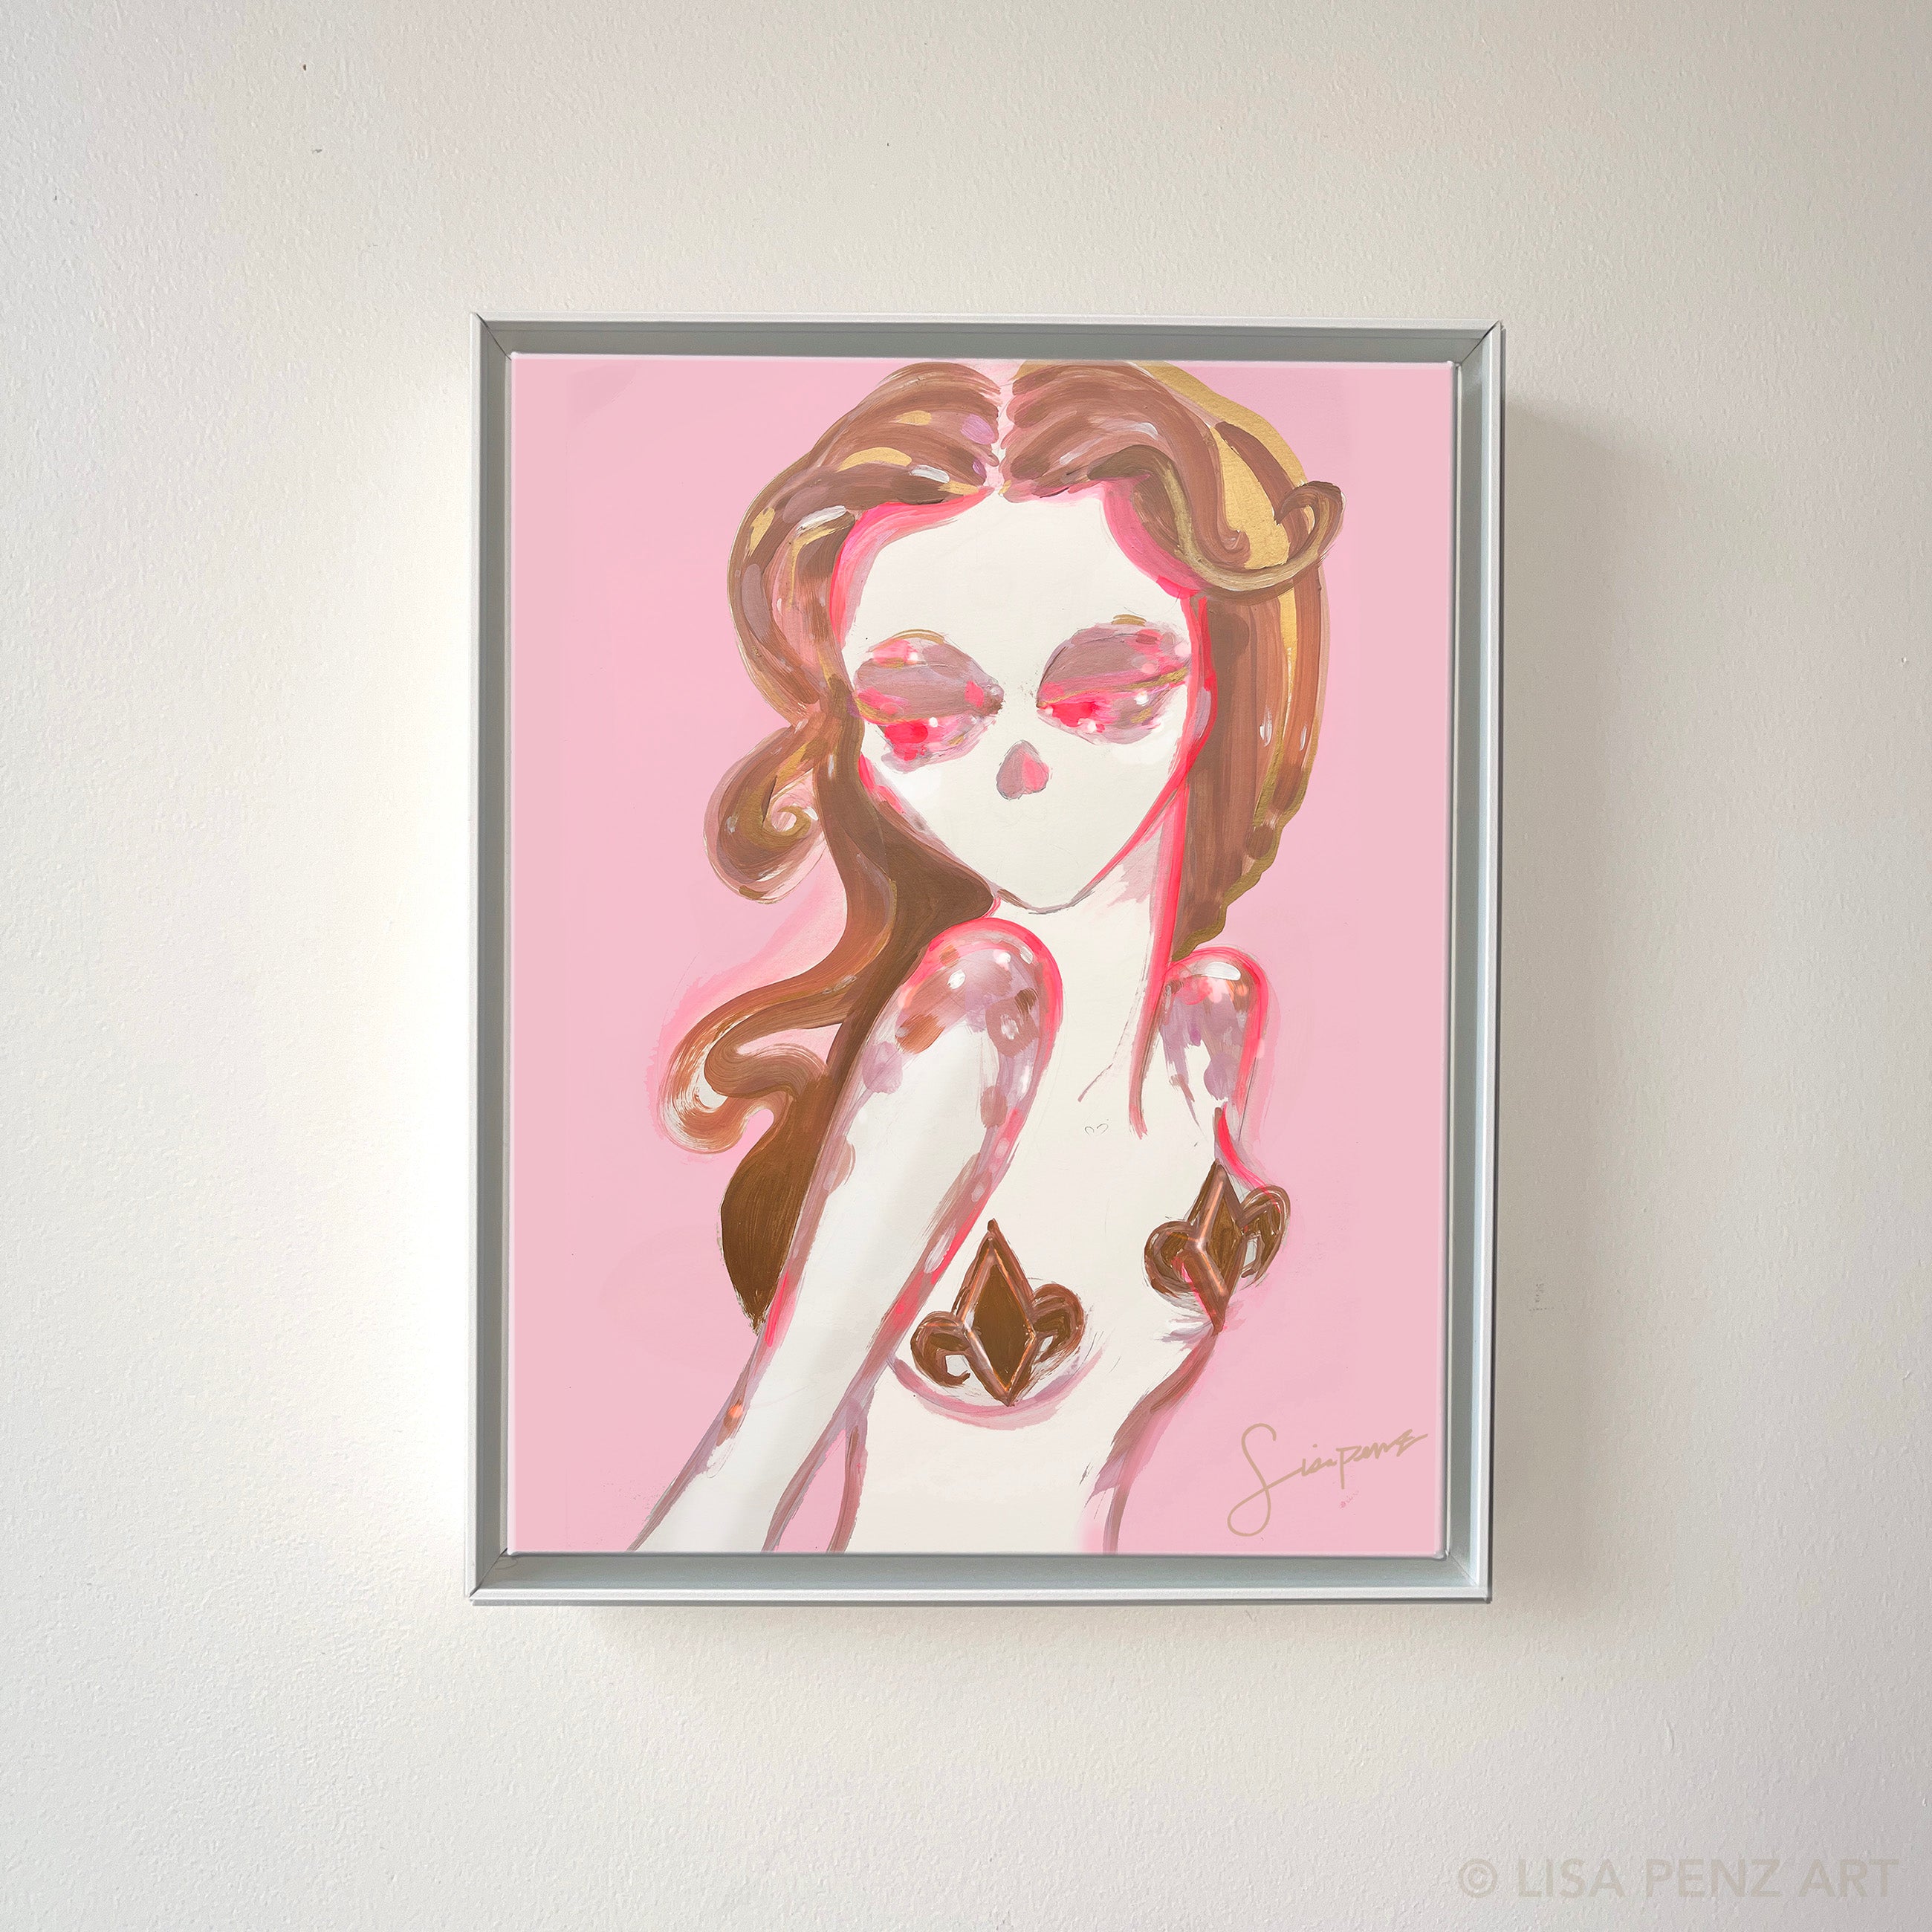 New Orleans female artist fleur de lis pink painting